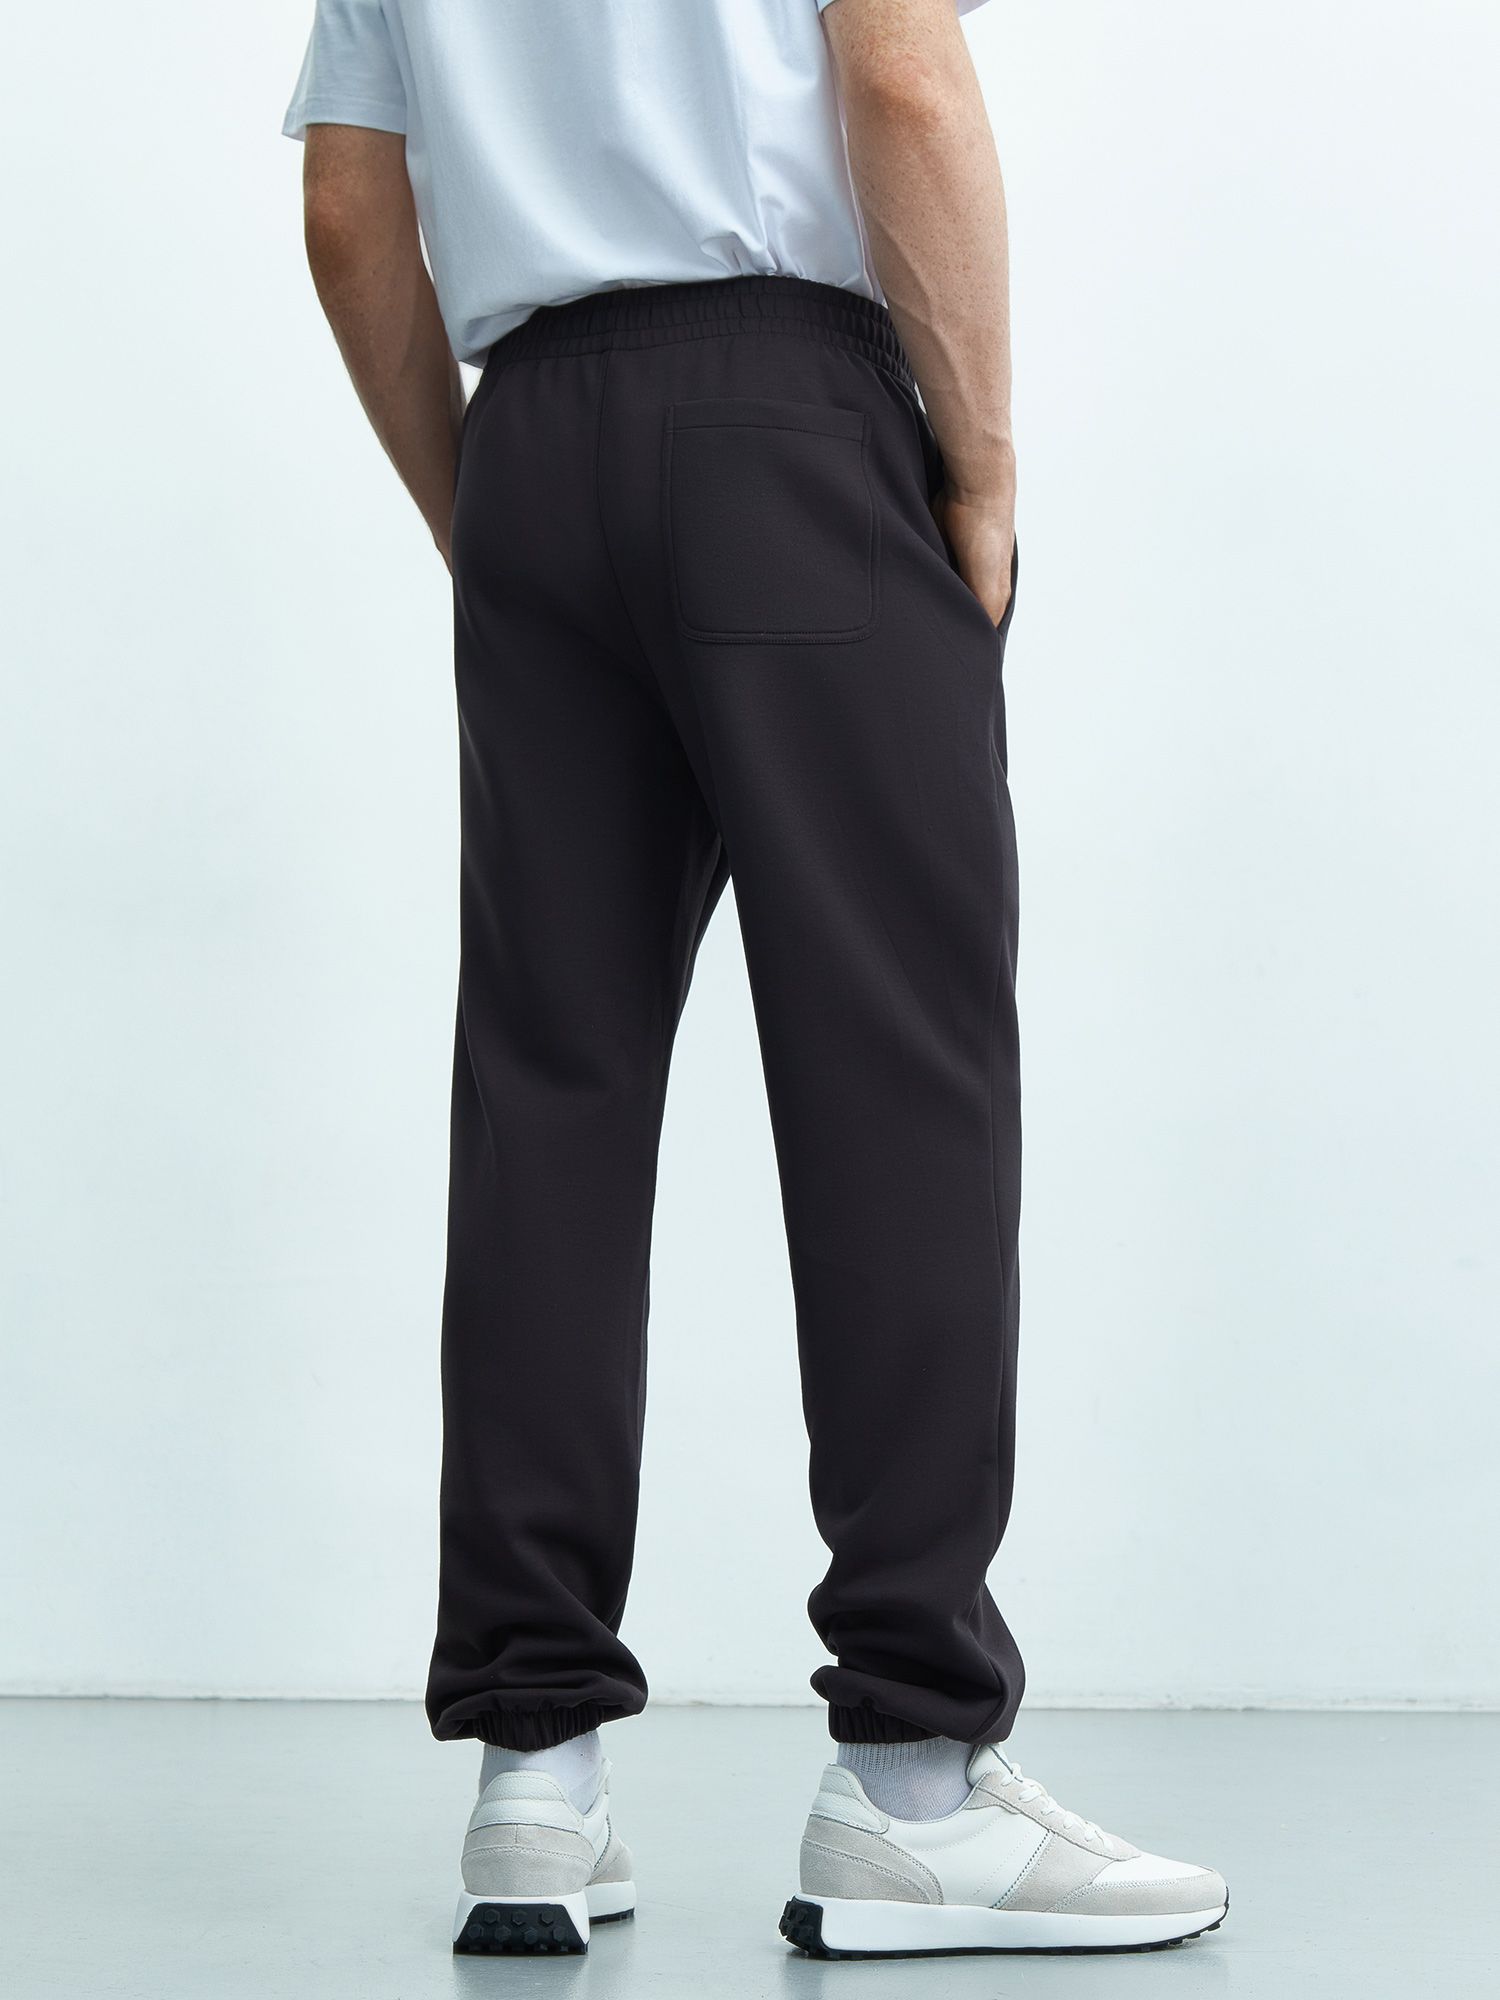 Мужские брюки из переработанного полиэстера. Изображение 3